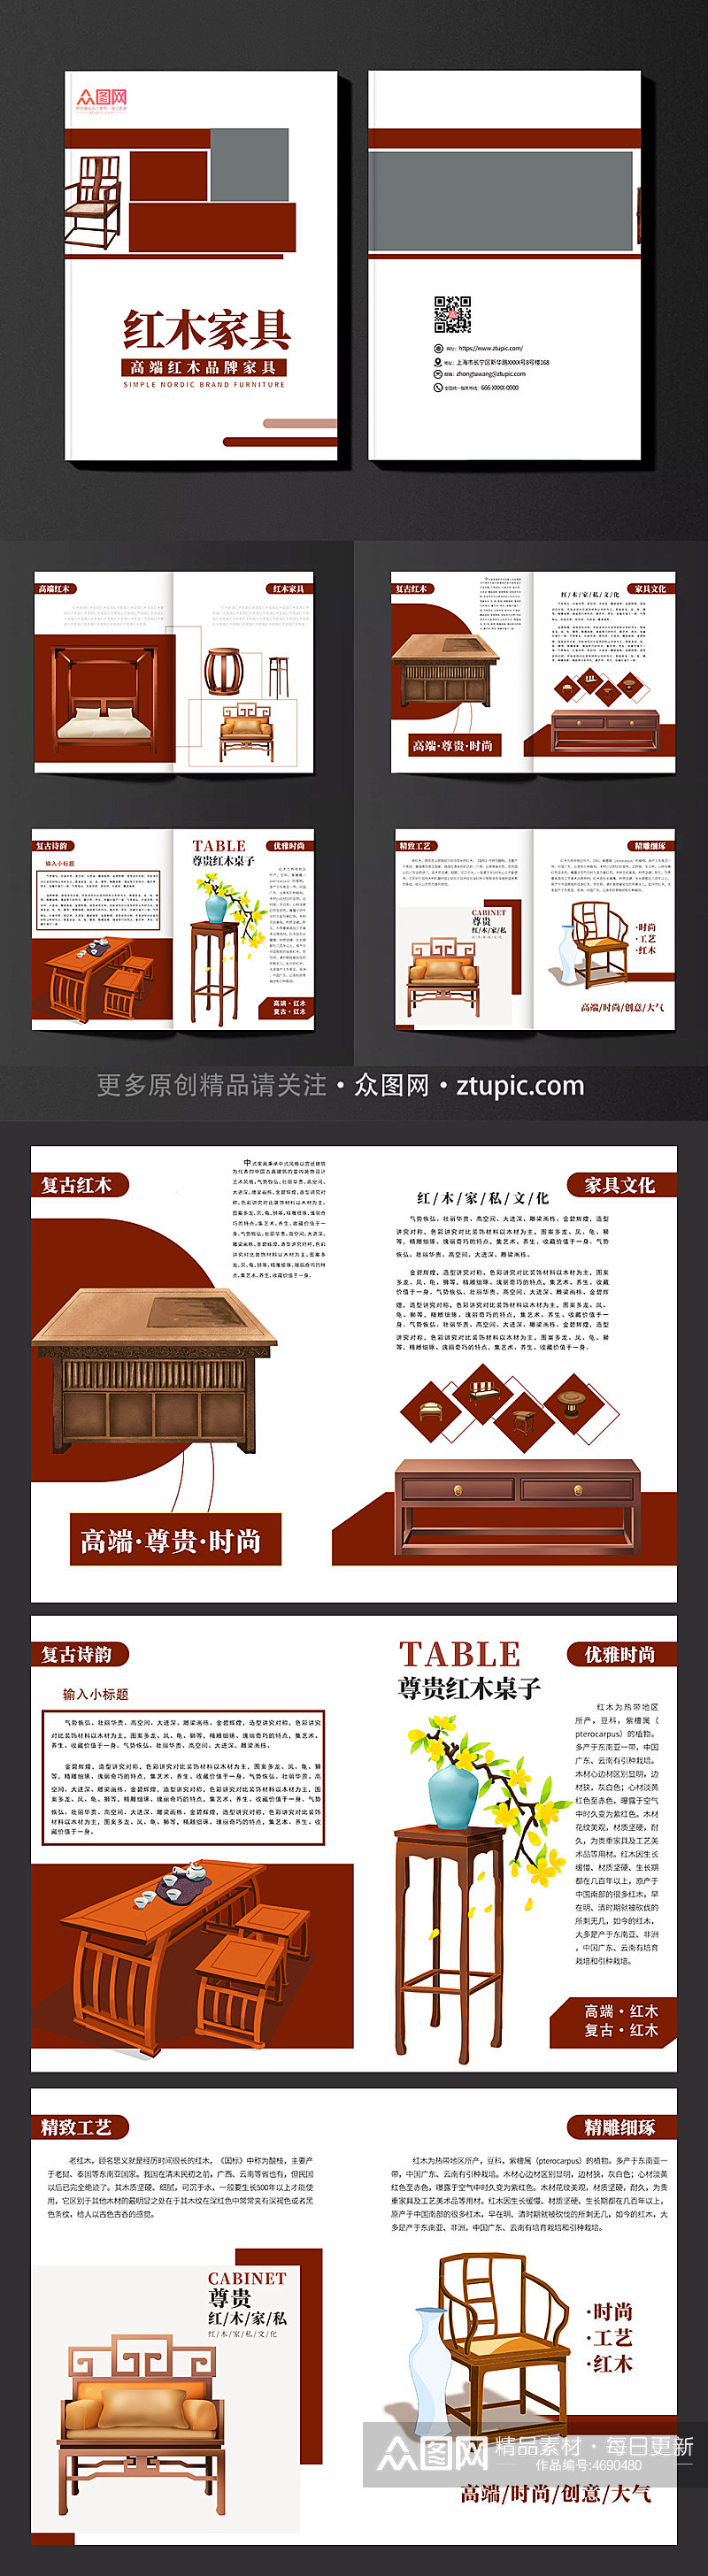 创意时尚红木家具画册设计图素材